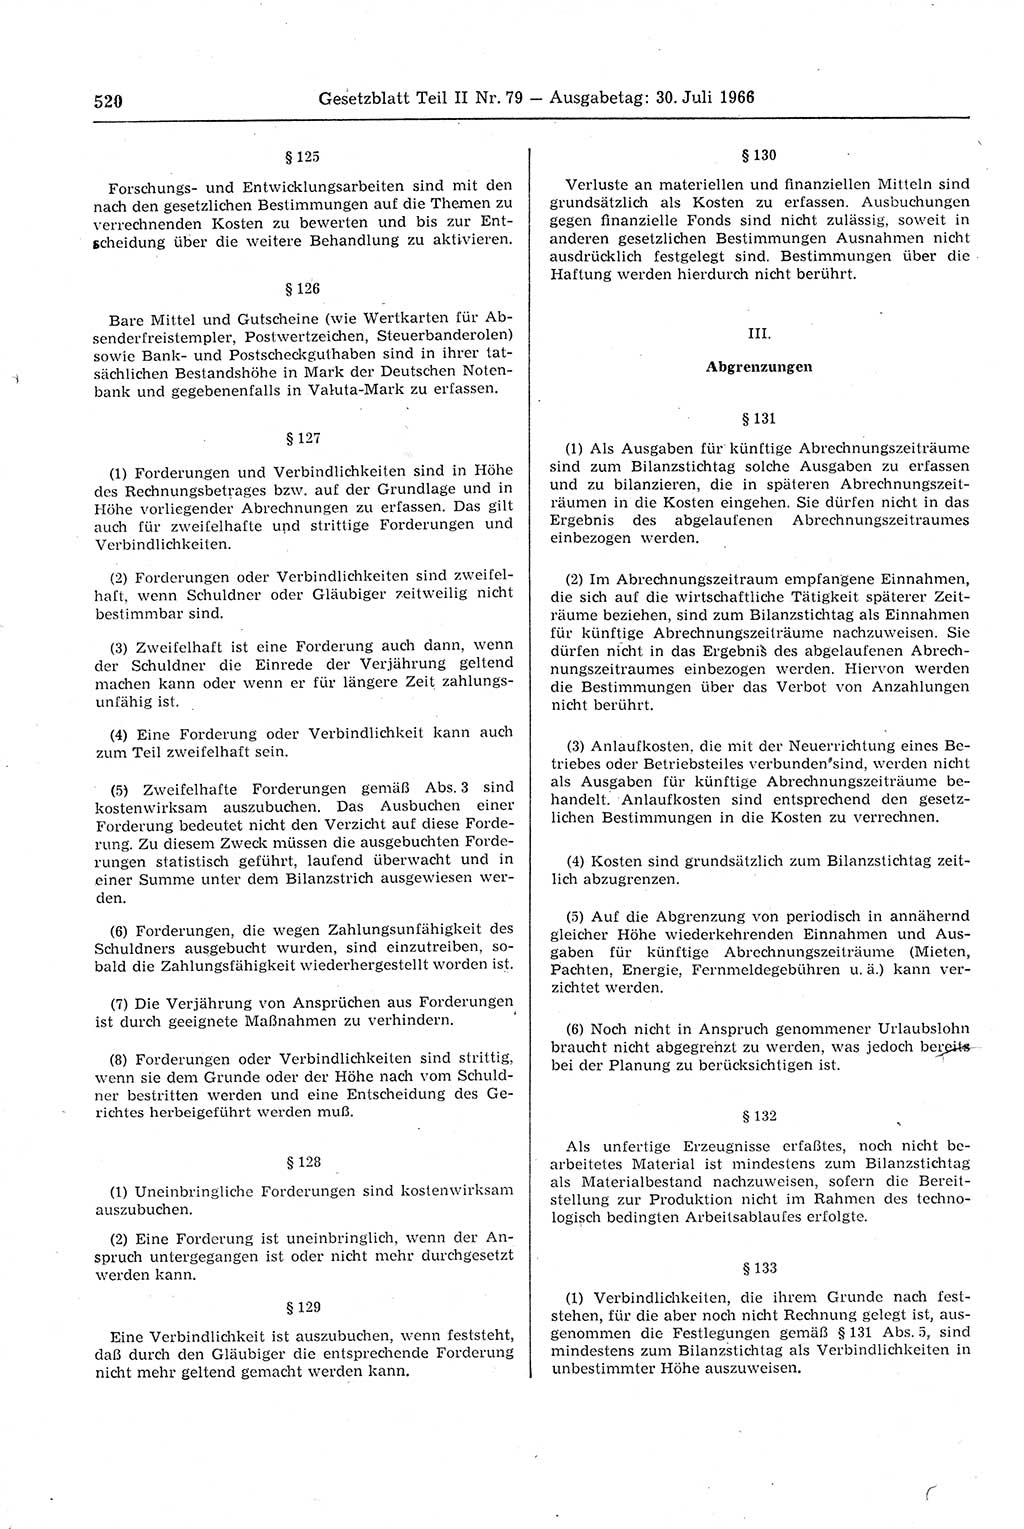 Gesetzblatt (GBl.) der Deutschen Demokratischen Republik (DDR) Teil ⅠⅠ 1966, Seite 520 (GBl. DDR ⅠⅠ 1966, S. 520)